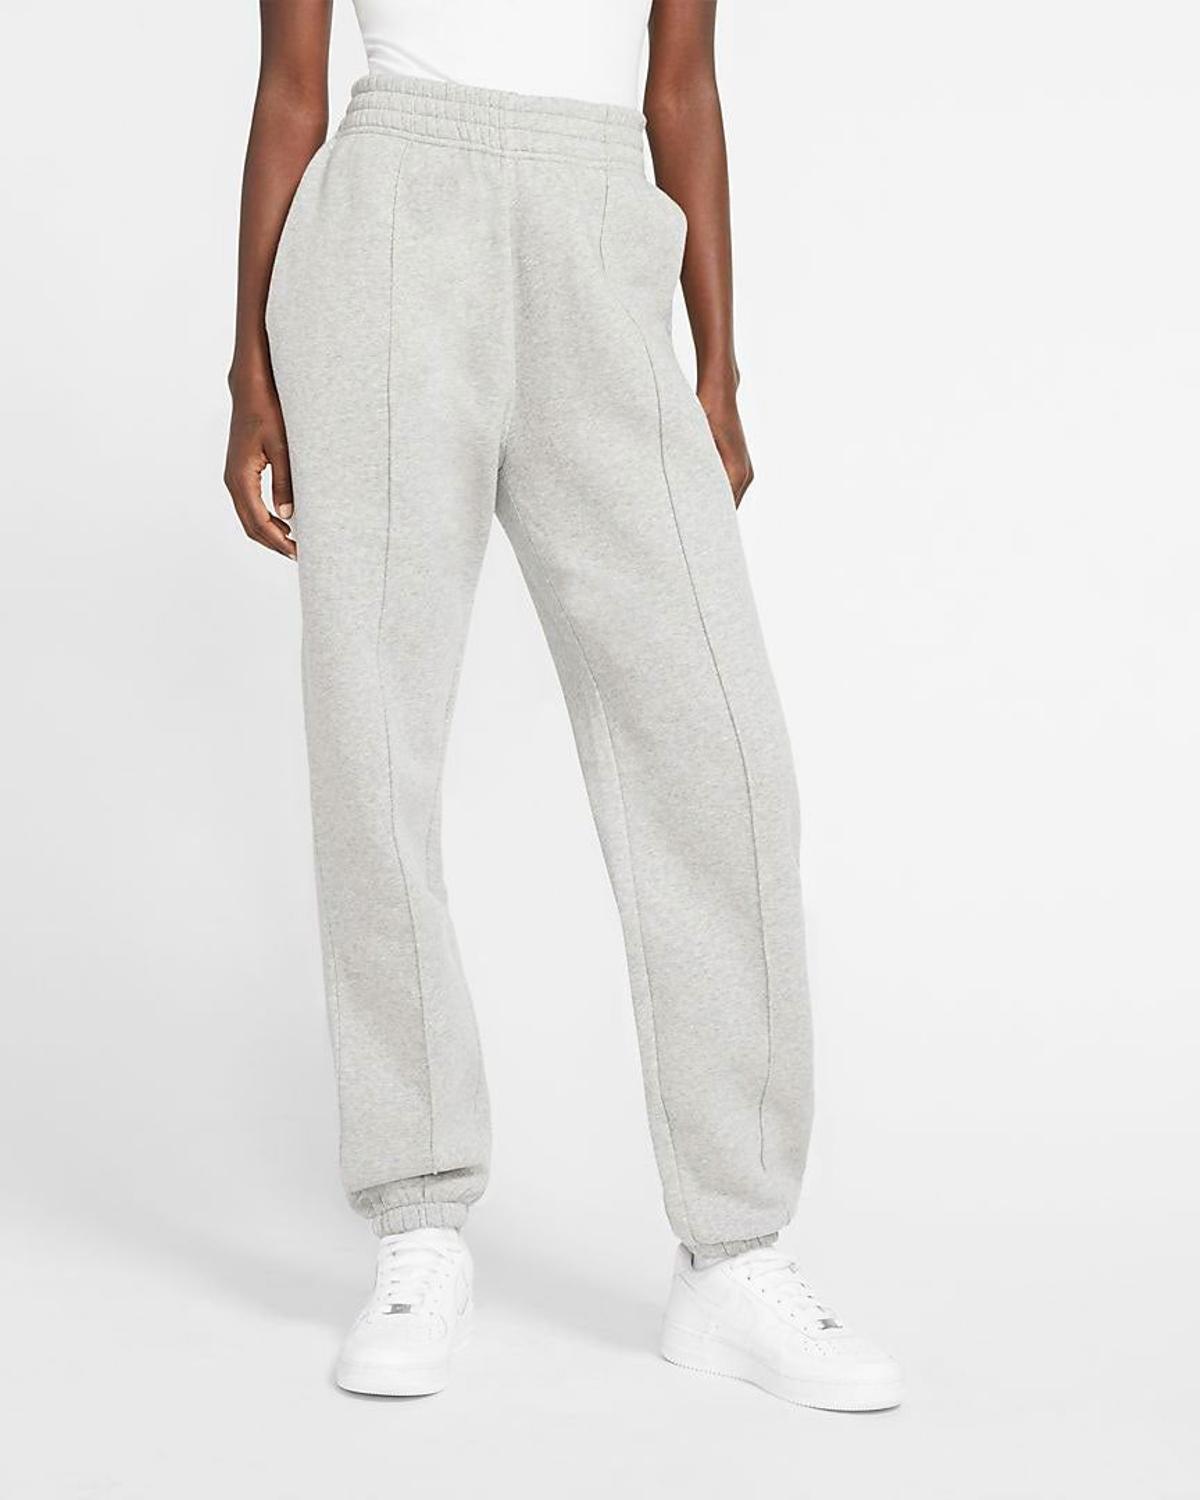 Pantalones de chándal, de Nike (44,99 euros)